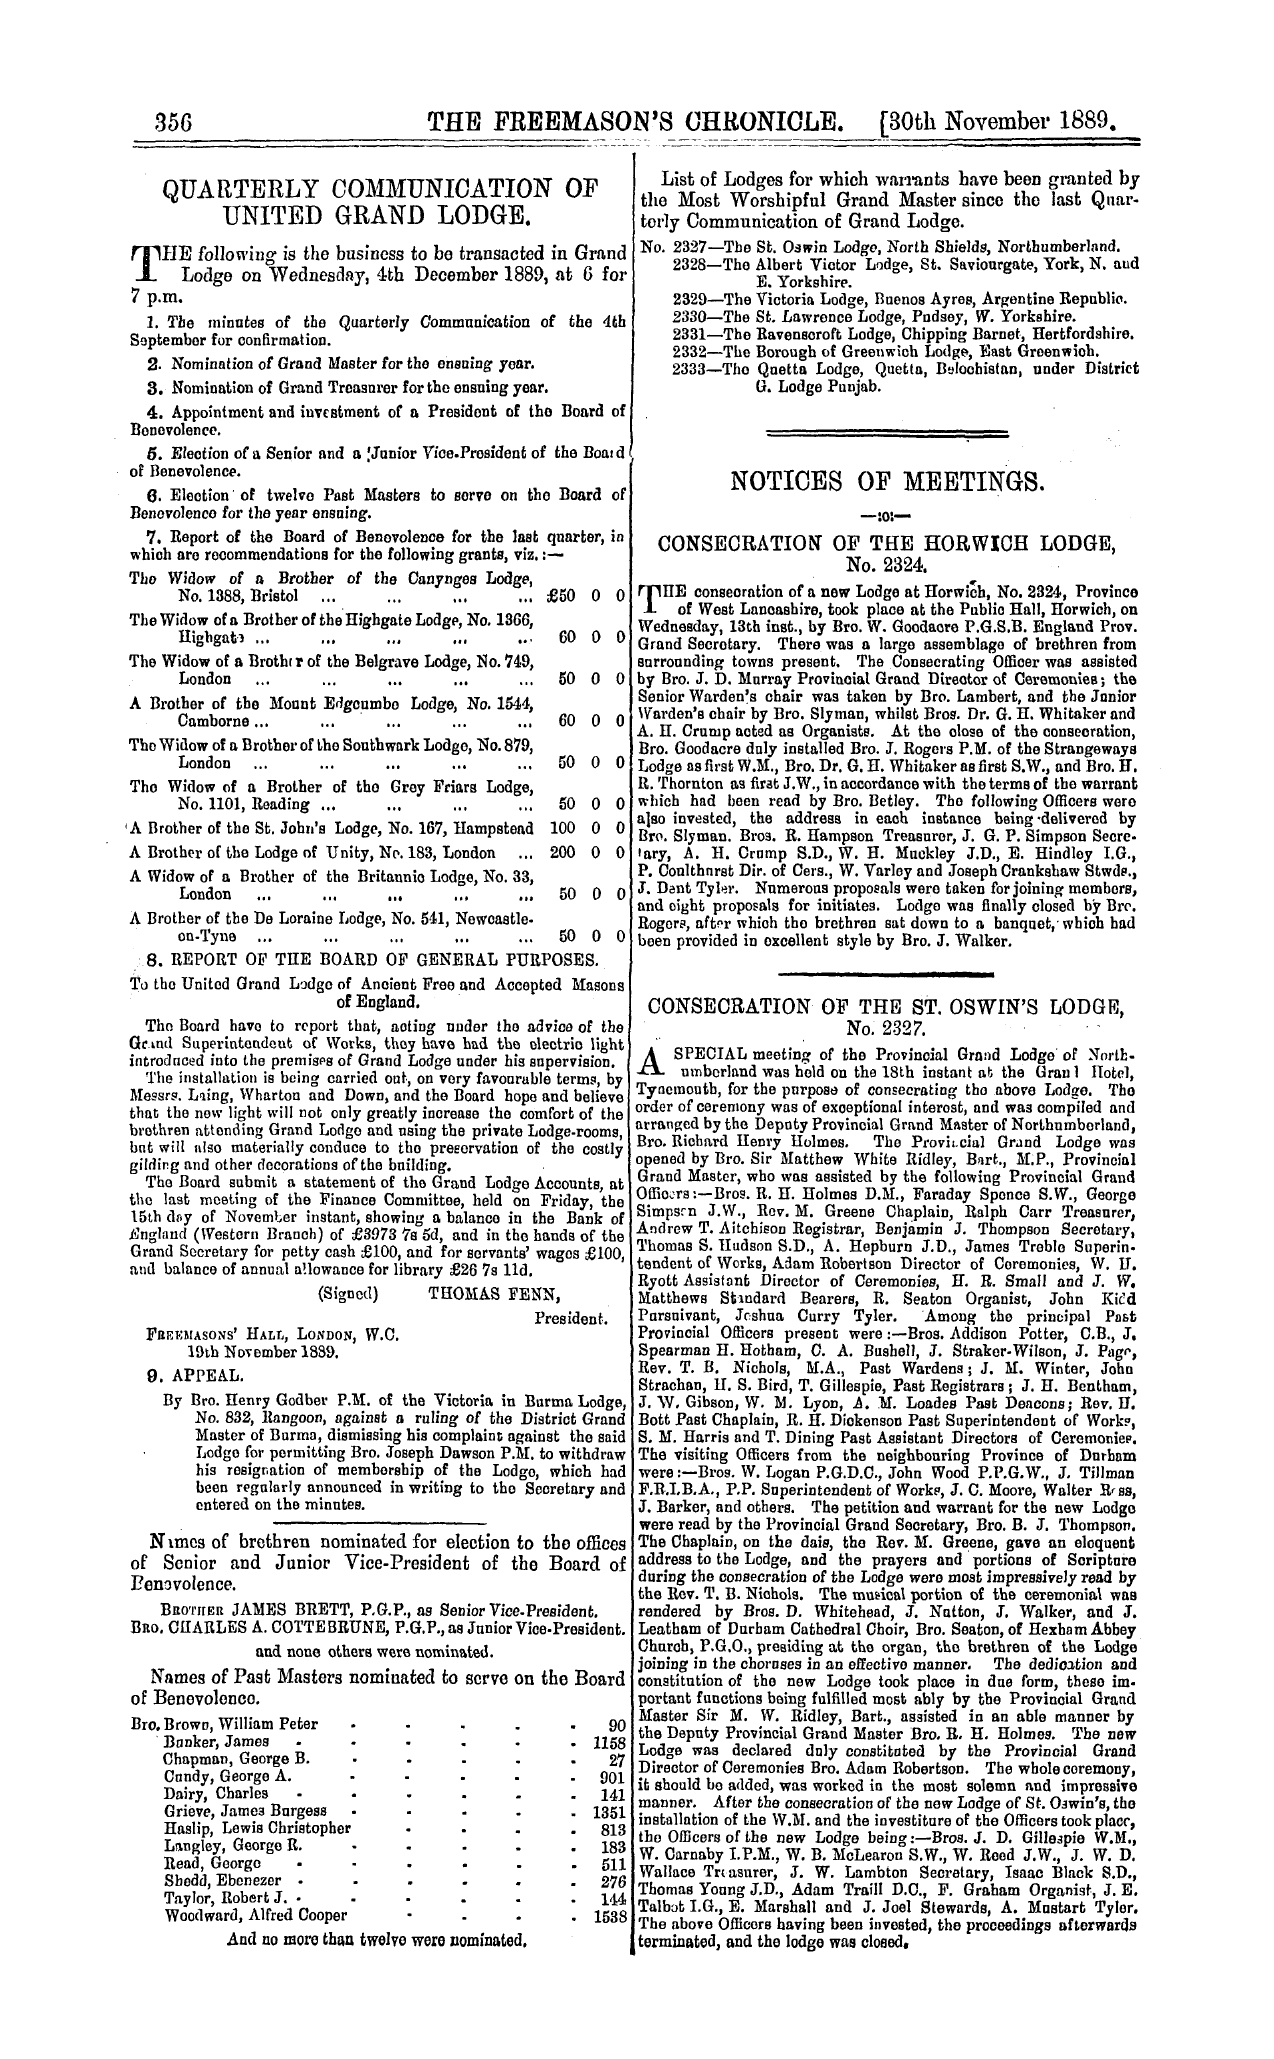 The Freemason's Chronicle: 1889-11-30 - Quarterly Communication Of United Grand Lodge.